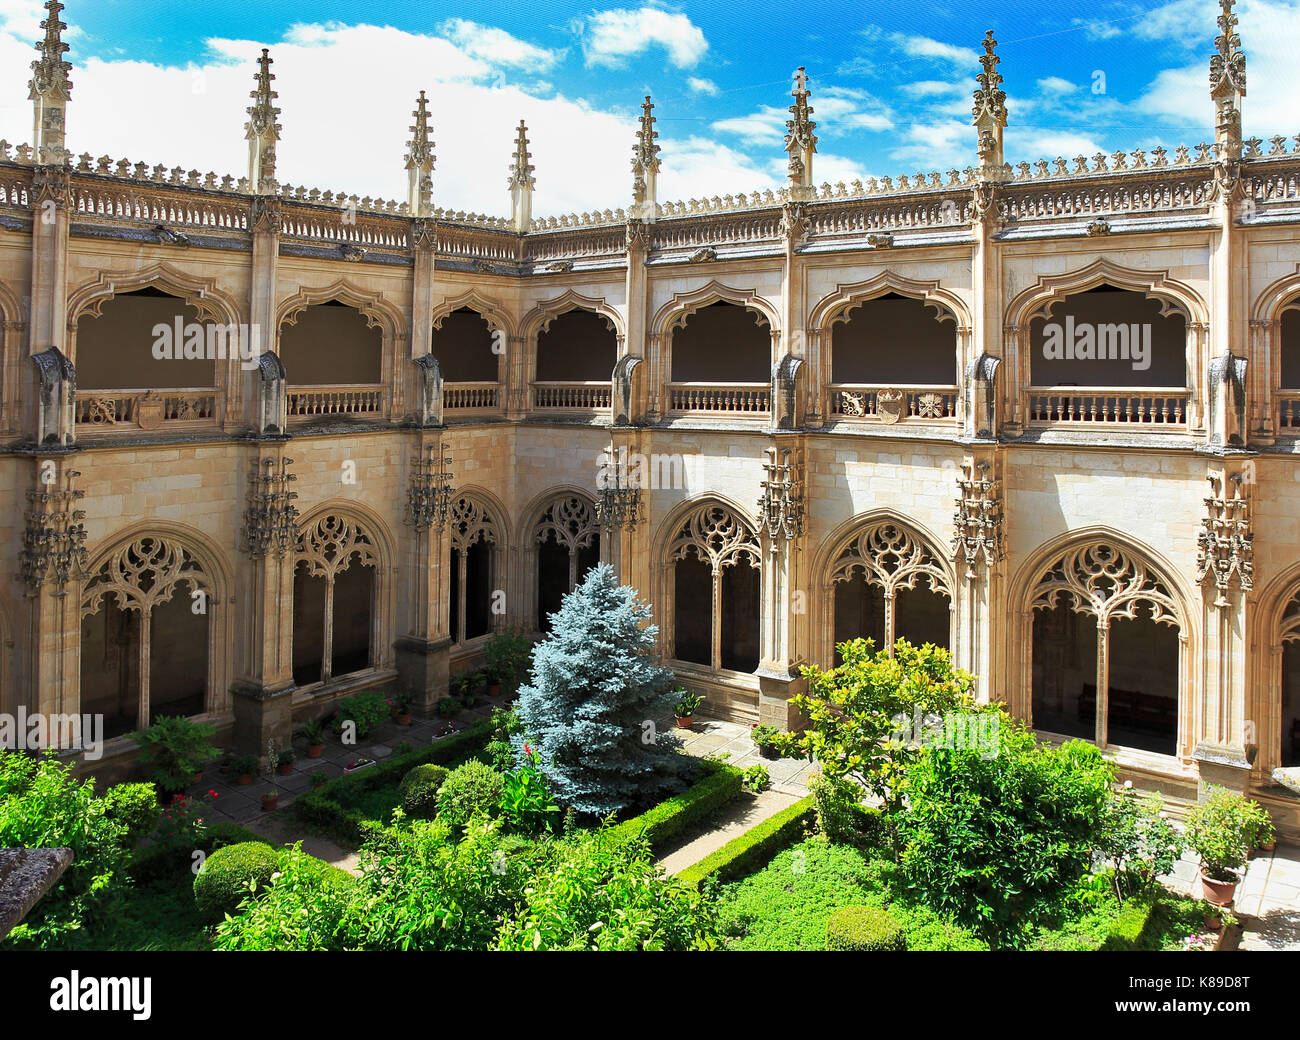 TOLEDO, SPANIEN - 26. Juni 2017: Das Kloster von San Juan de los Reyes ist ein Isabelline stil Kloster in Toledo, Kastilien-La Mancha, Spanien, gebaut b Stockfoto